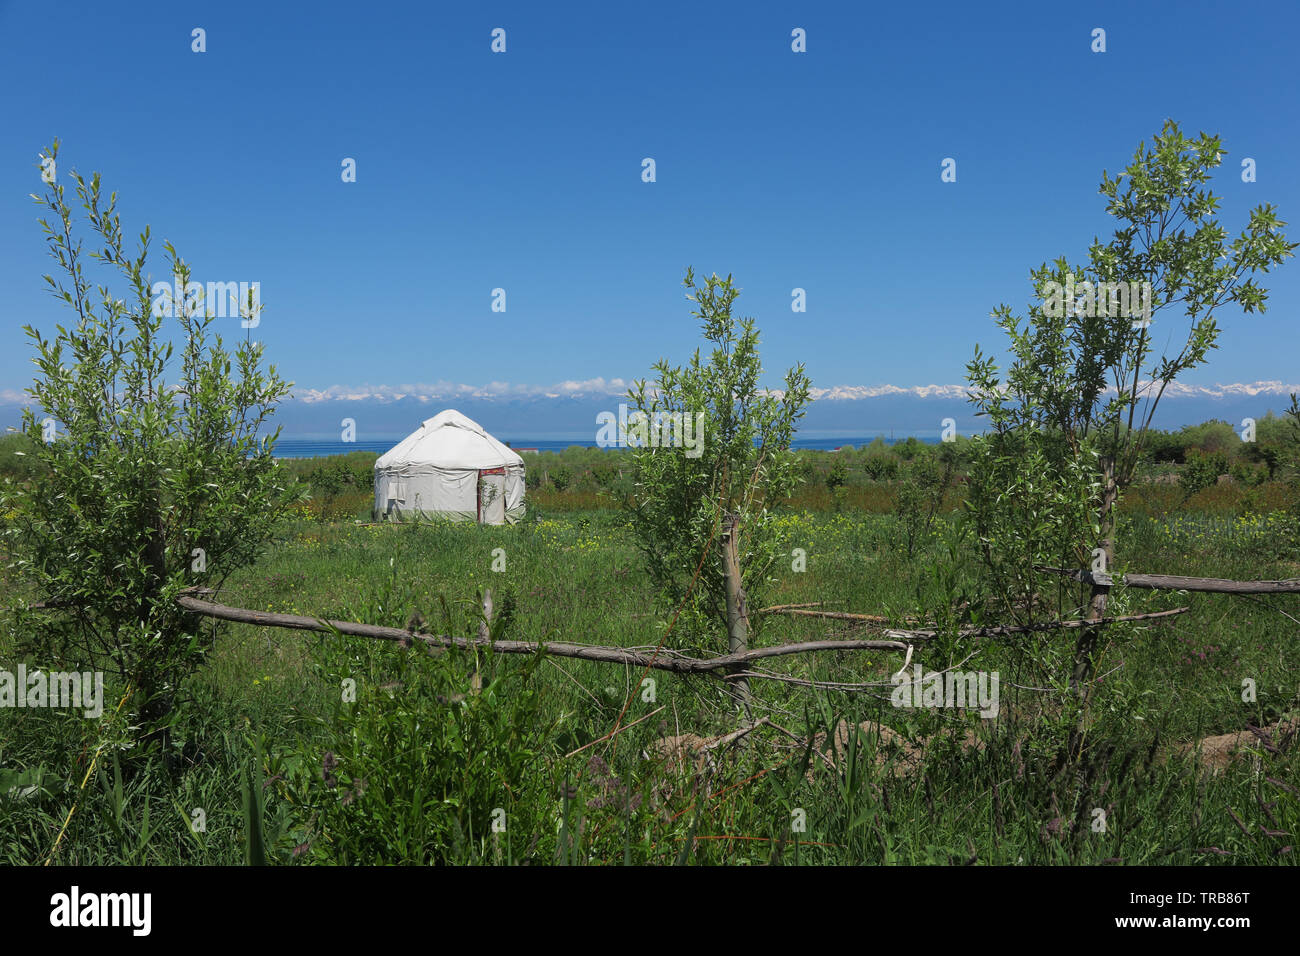 The kyrgyz yurt in a garden. Stock Photo